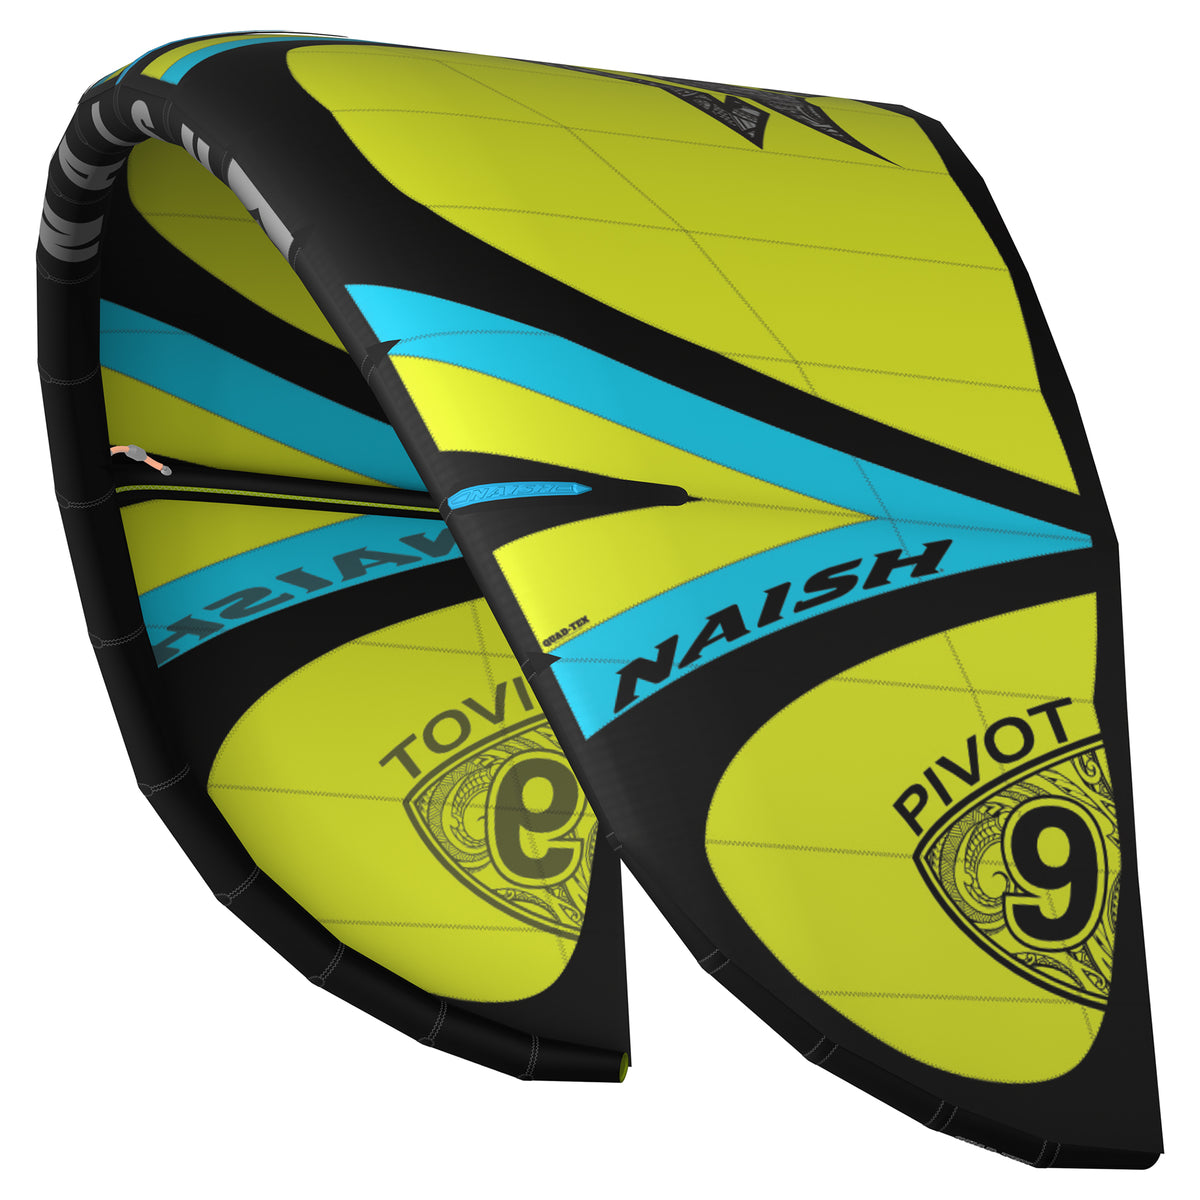 Vela per kitesurf Naish Pivot S27 giallo Kitepoint.shop Malcesine